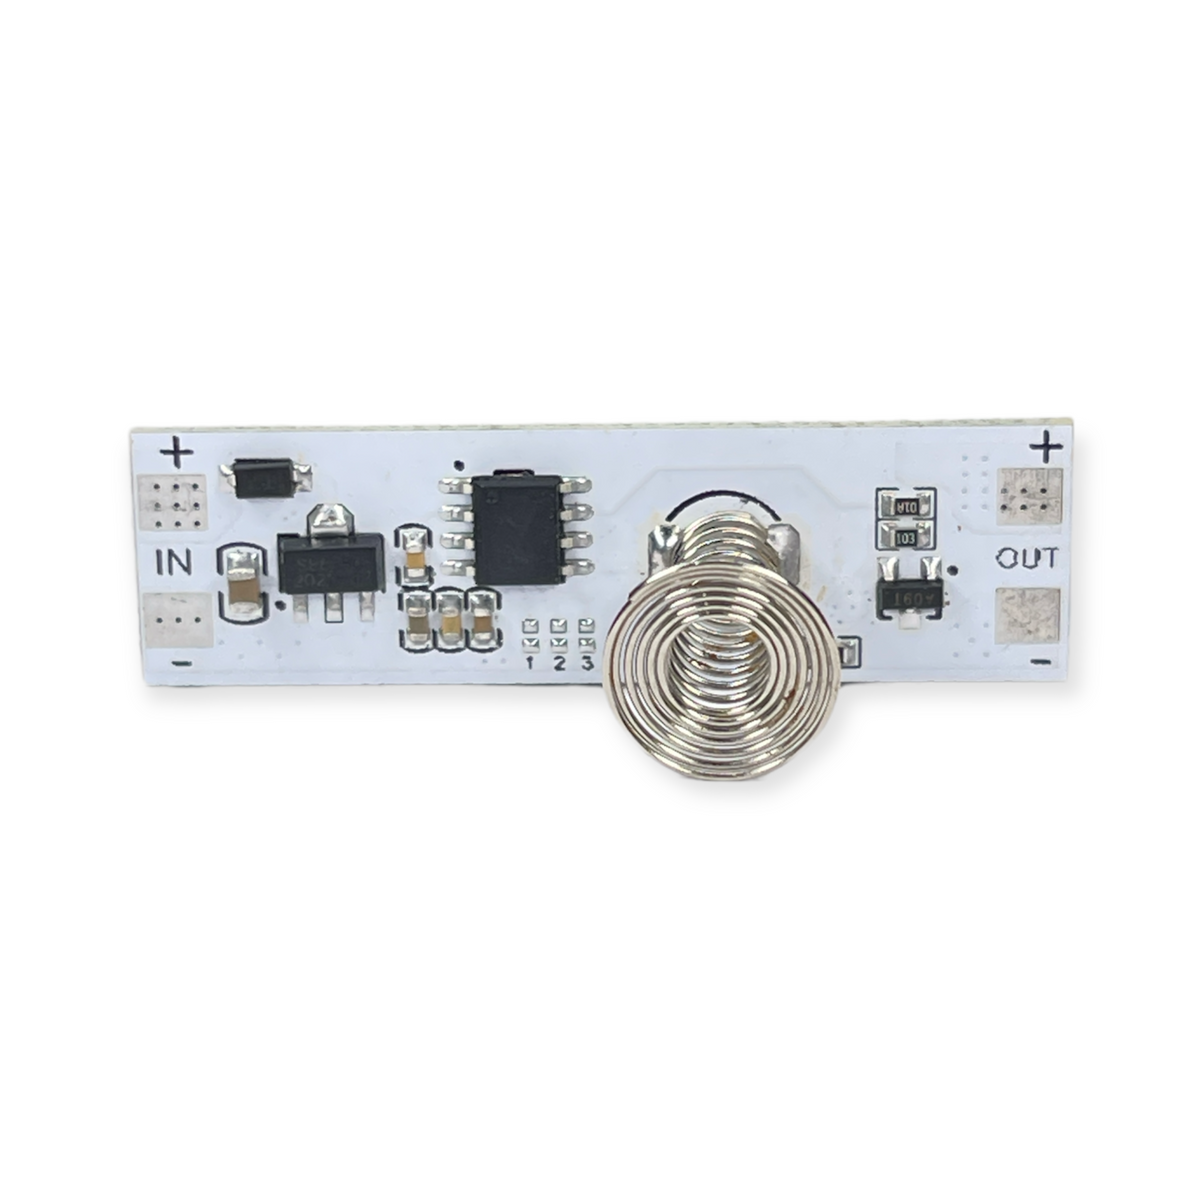 1830115 de LED-DI - Sensor Interruptor Tactil Tira LED 5-24V 96W